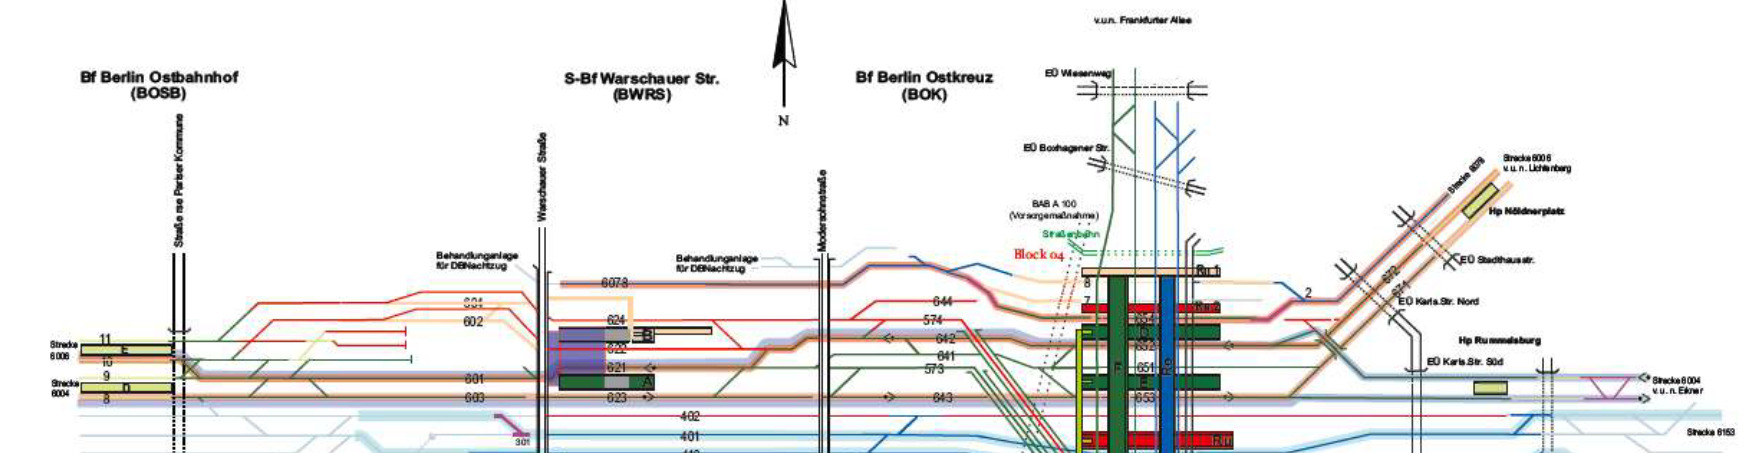 Umbau/Grunderneuerung Ostkreuz Bauzustand S-Bahn (Stadtbahnebene) ab August 2017 Umfang der Arbeiten: